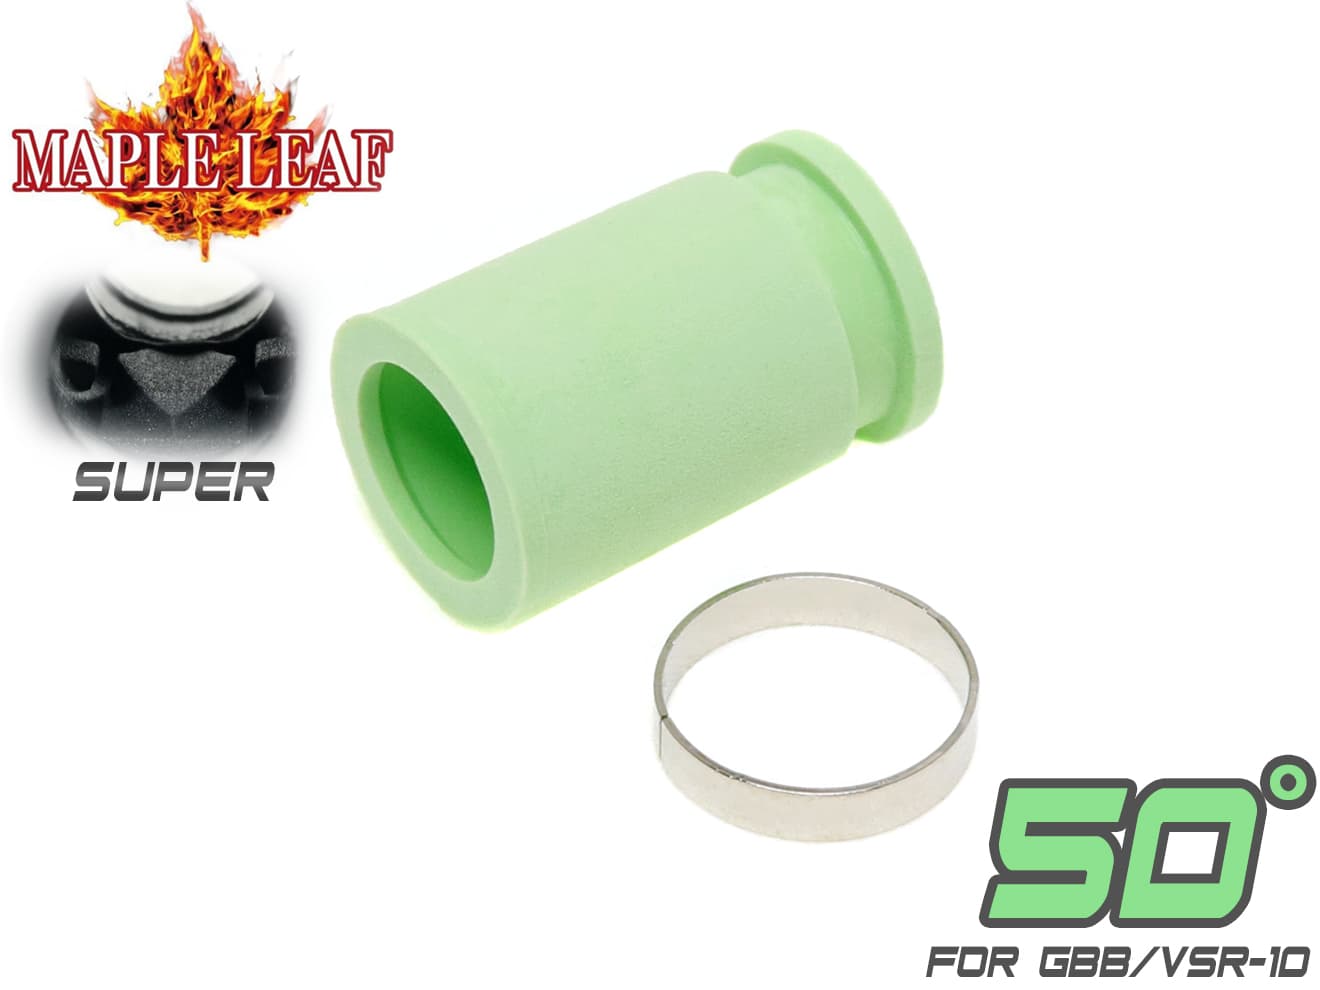 Maple Leaf MACARON SUPER ホップアップパッキン for GBB/VSR-10 [パッキン硬度：50° / 60° / 70° / 75° / 80°]